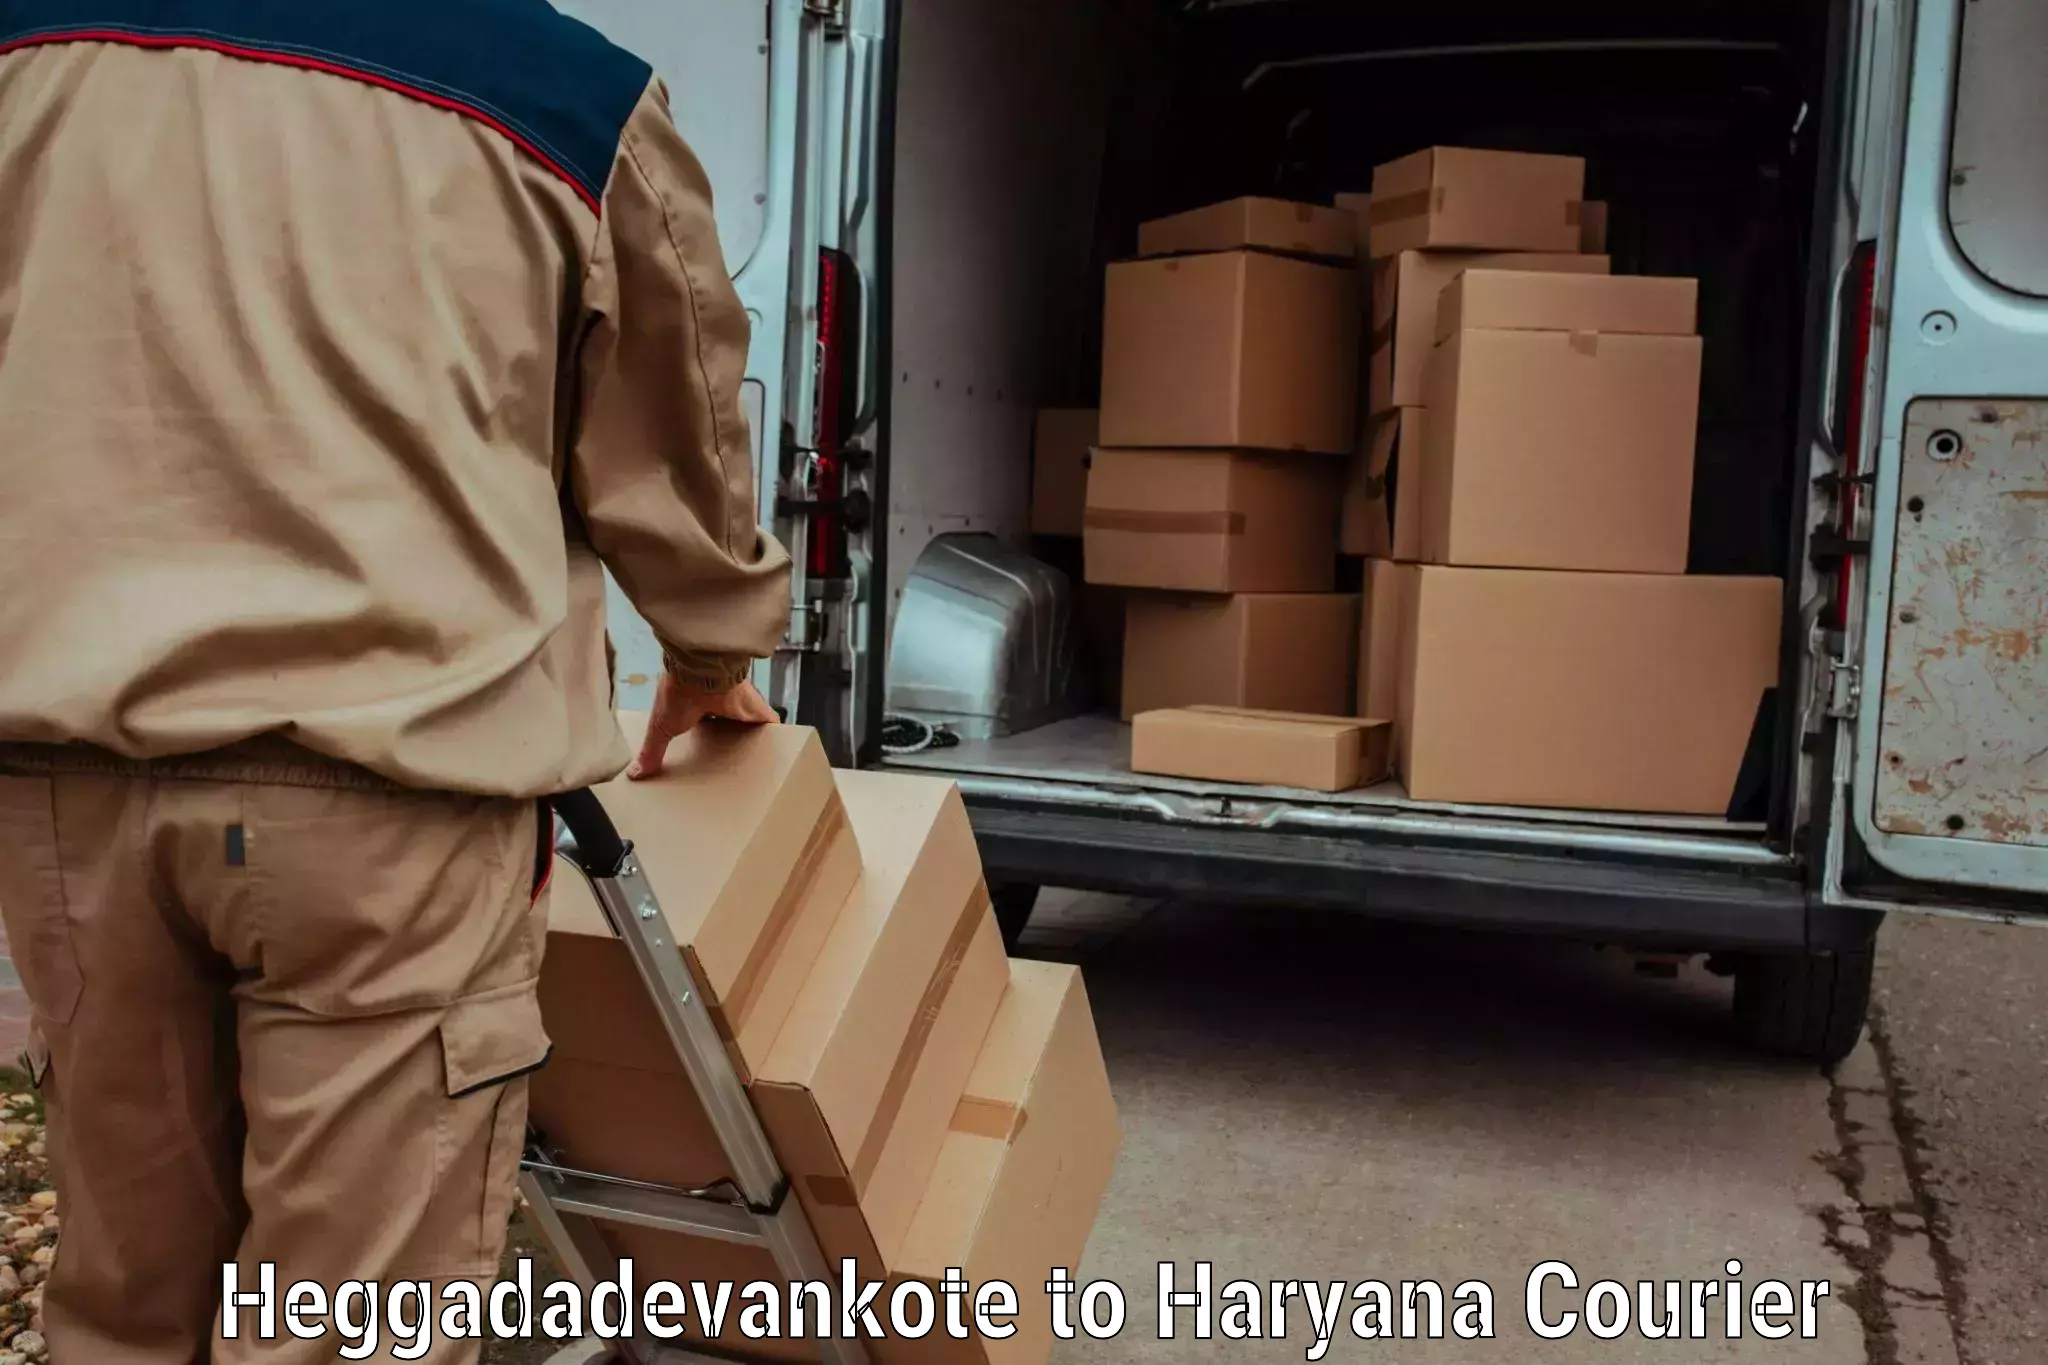 Express shipping Heggadadevankote to Hansi